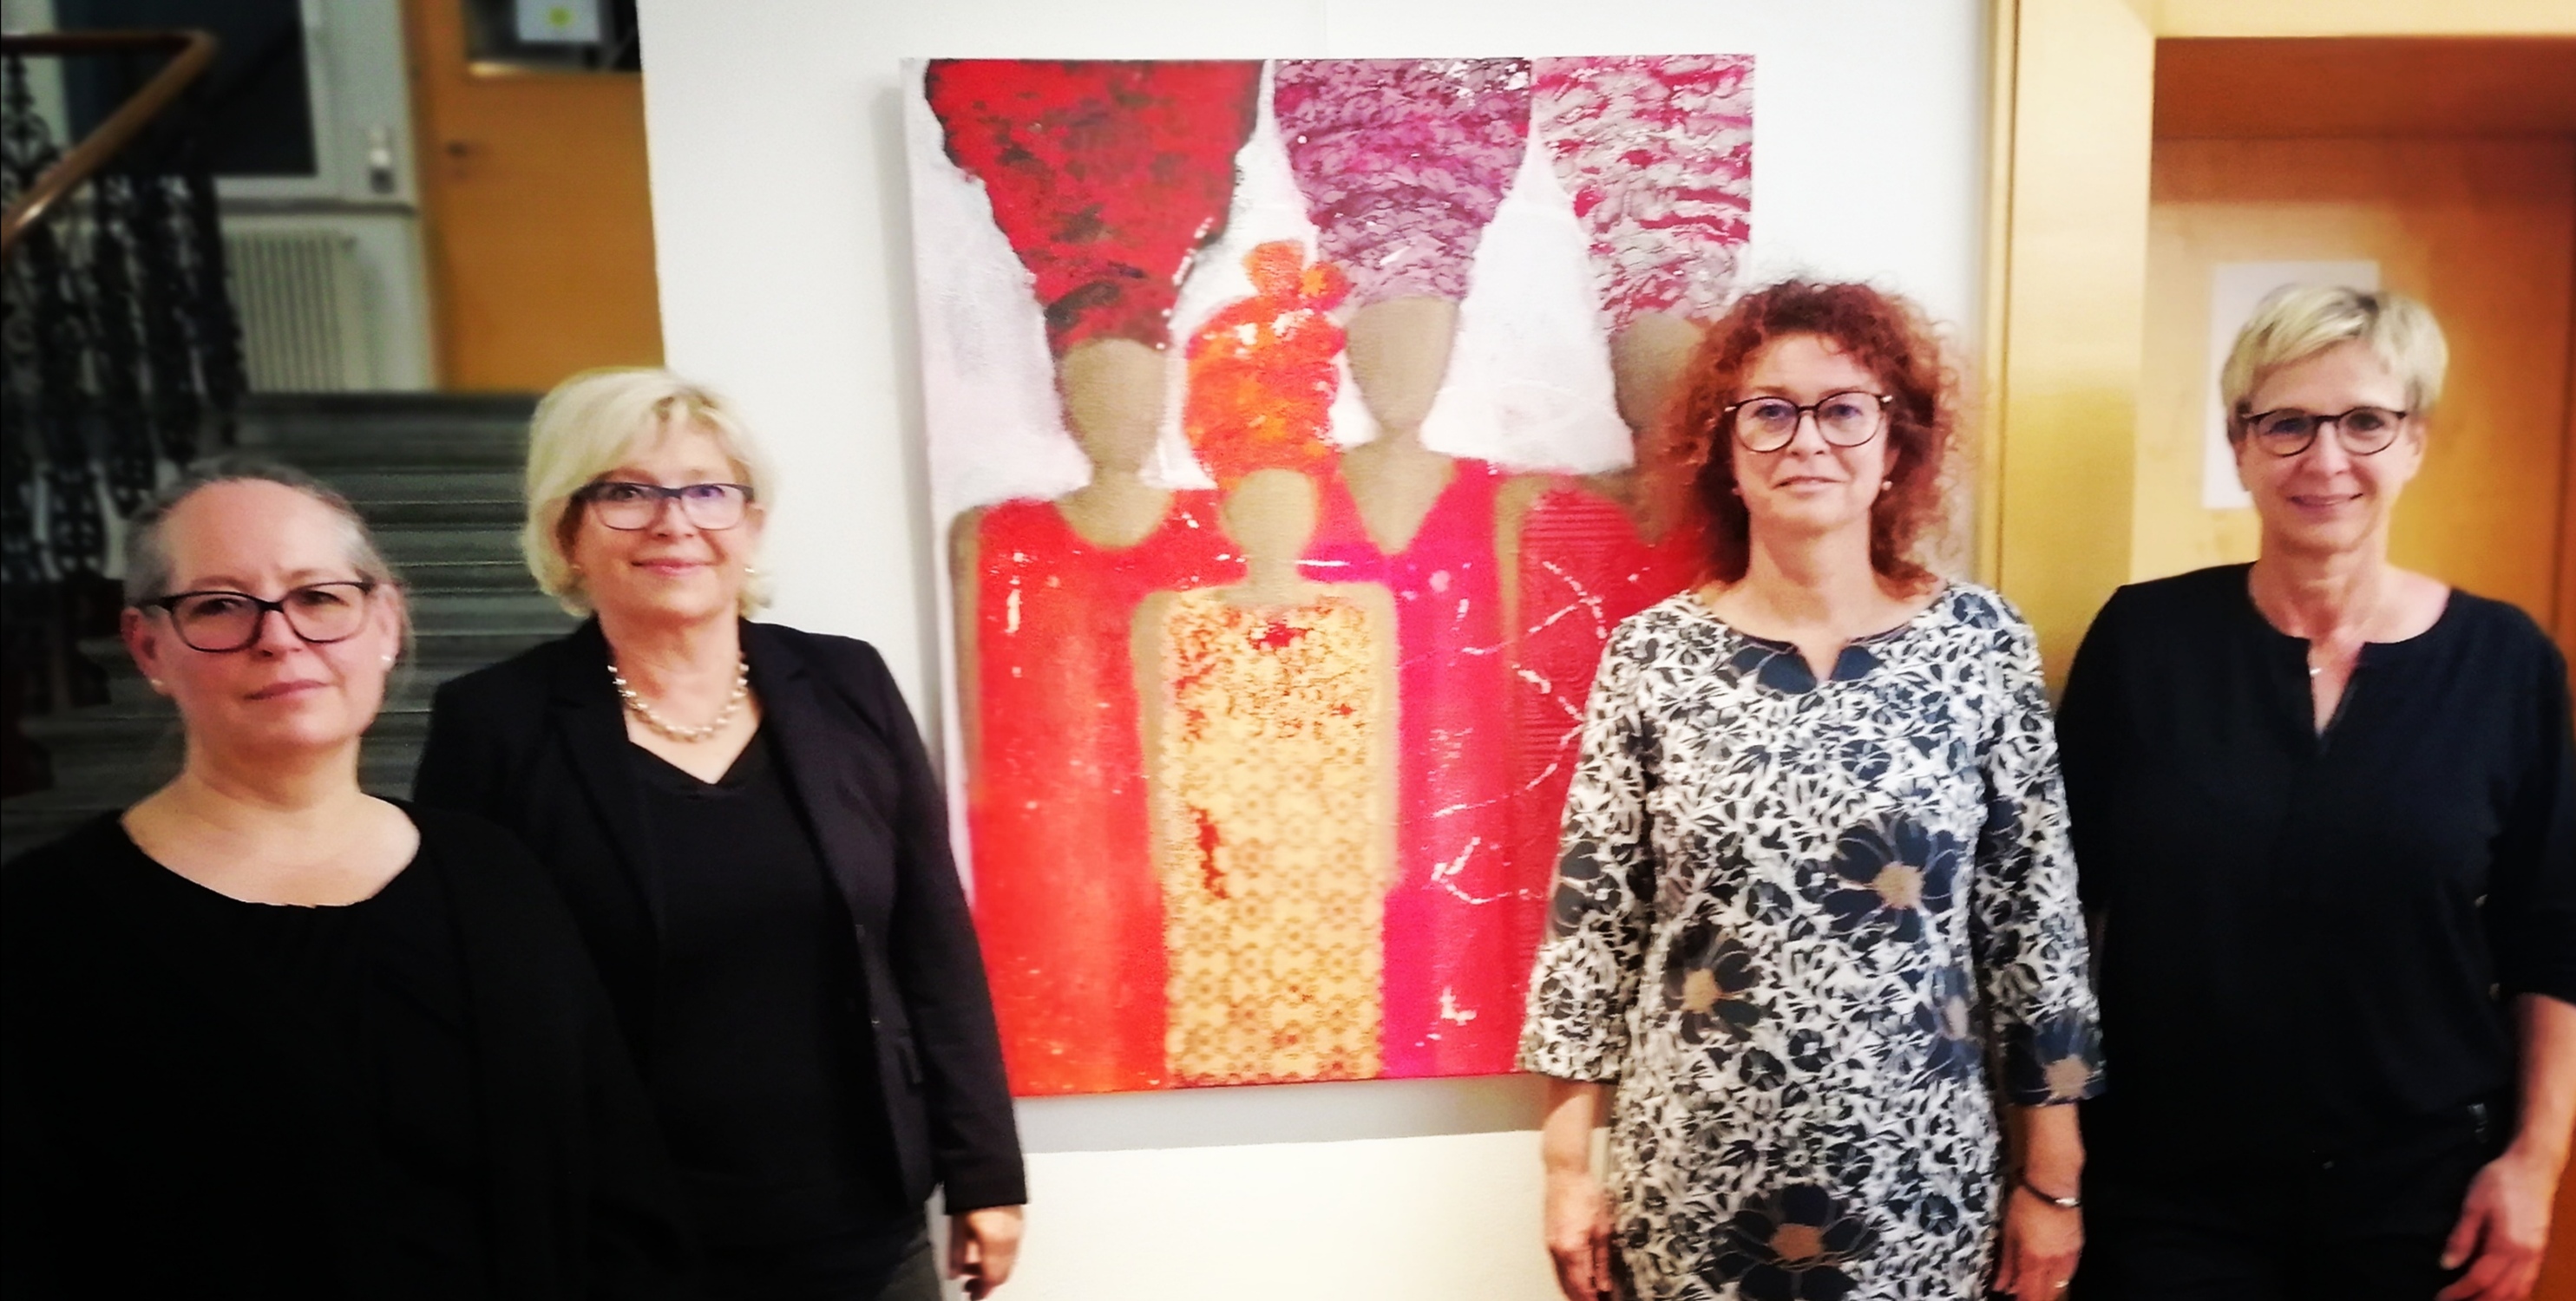 Künstlerinnen Weibsbilder - 4 Frauen mit der gemeinsamen Leidenschaft für die Malerei